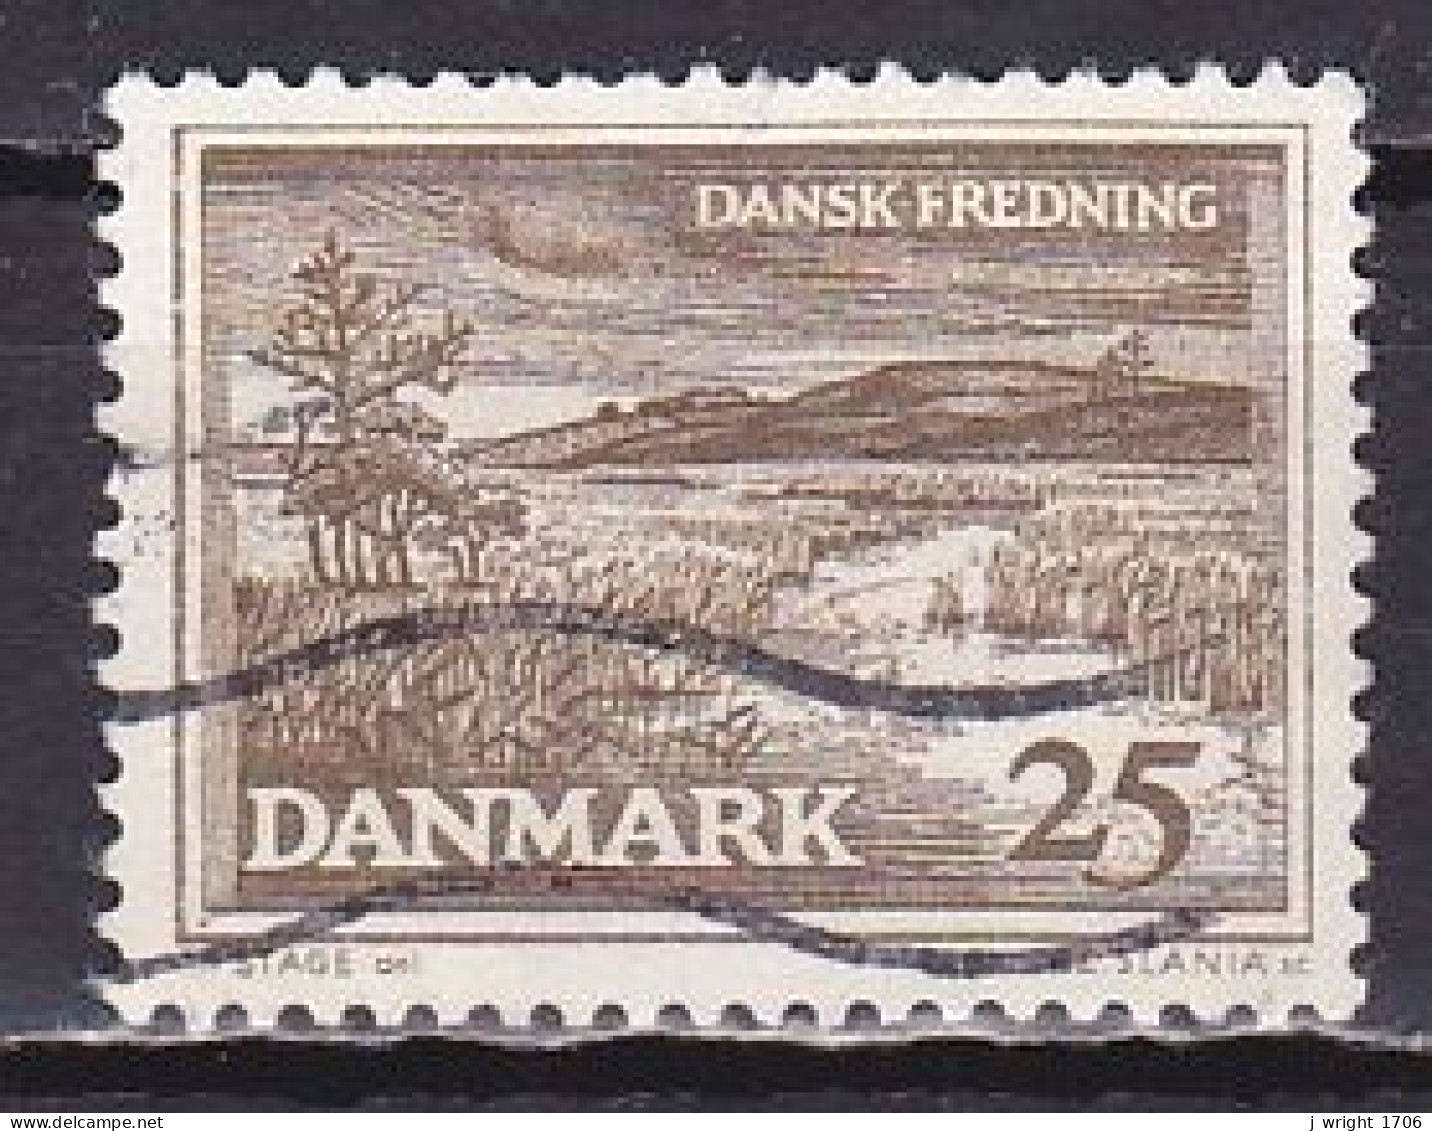 Denmark, 1964, Natural Preservation/R. Karup Landscape, 25ø, USED - Used Stamps